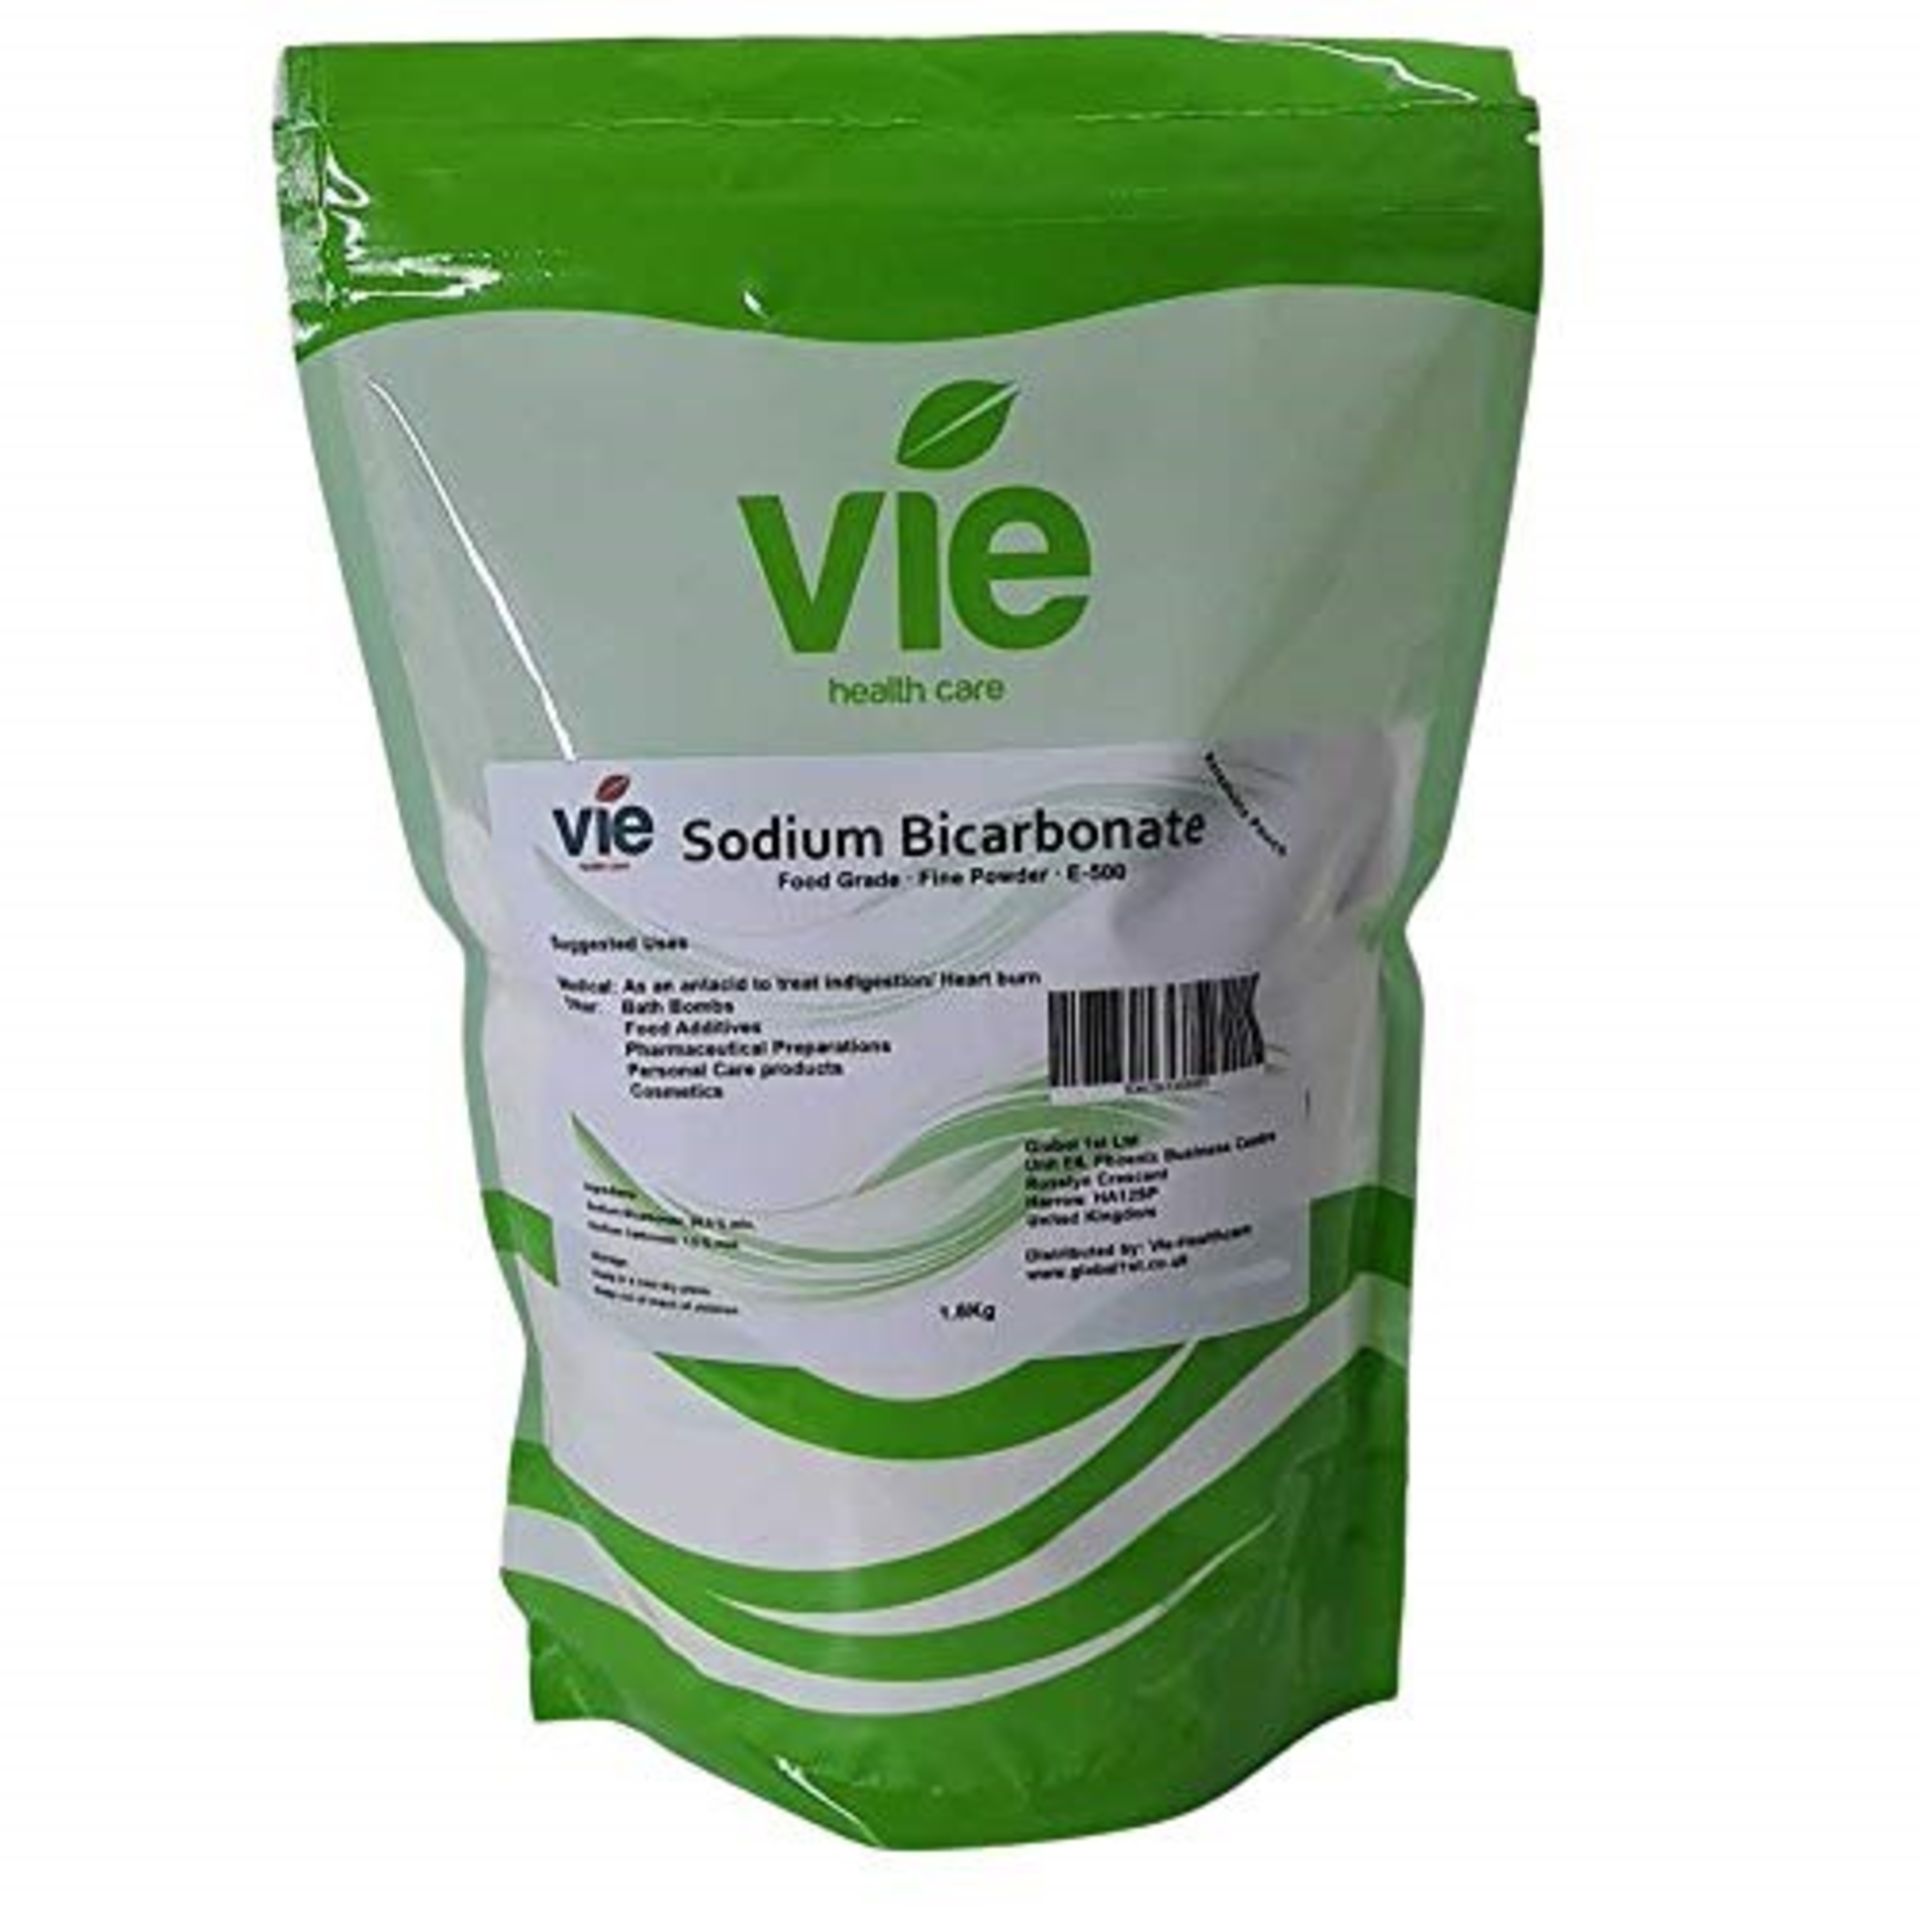 VIE Sodium Bicarbonate, Resealable Pouch, 1.8Kg